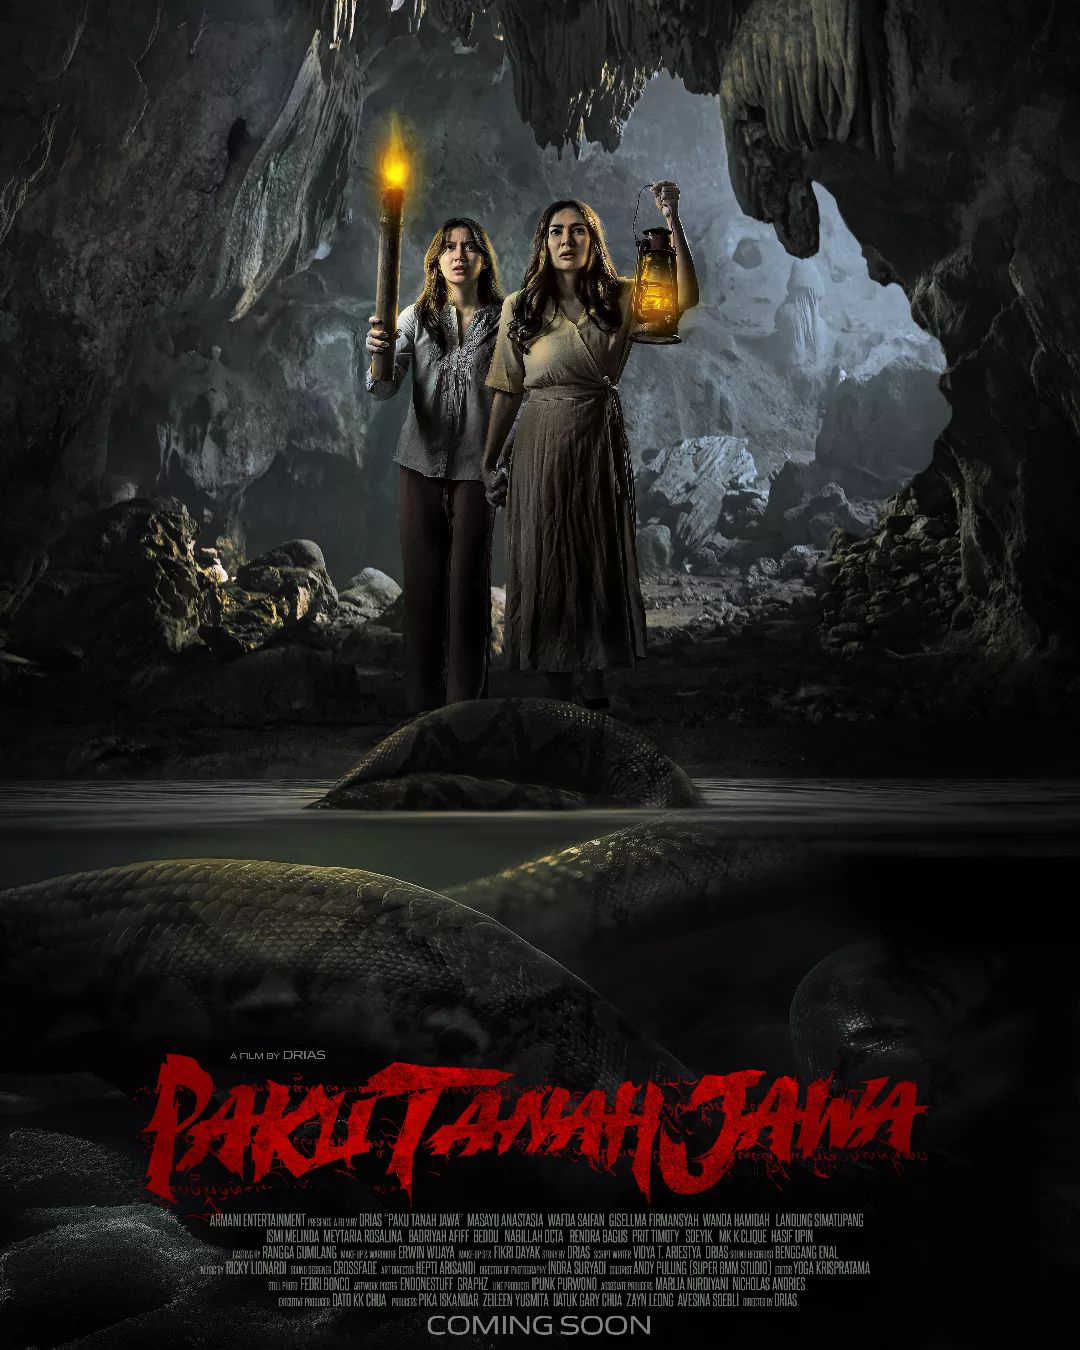 Kisah Mistis Gunung Tidar dalam Film Paku Tanah Jawa, Sinopsis dan Jadwal Tayang di Bioskop